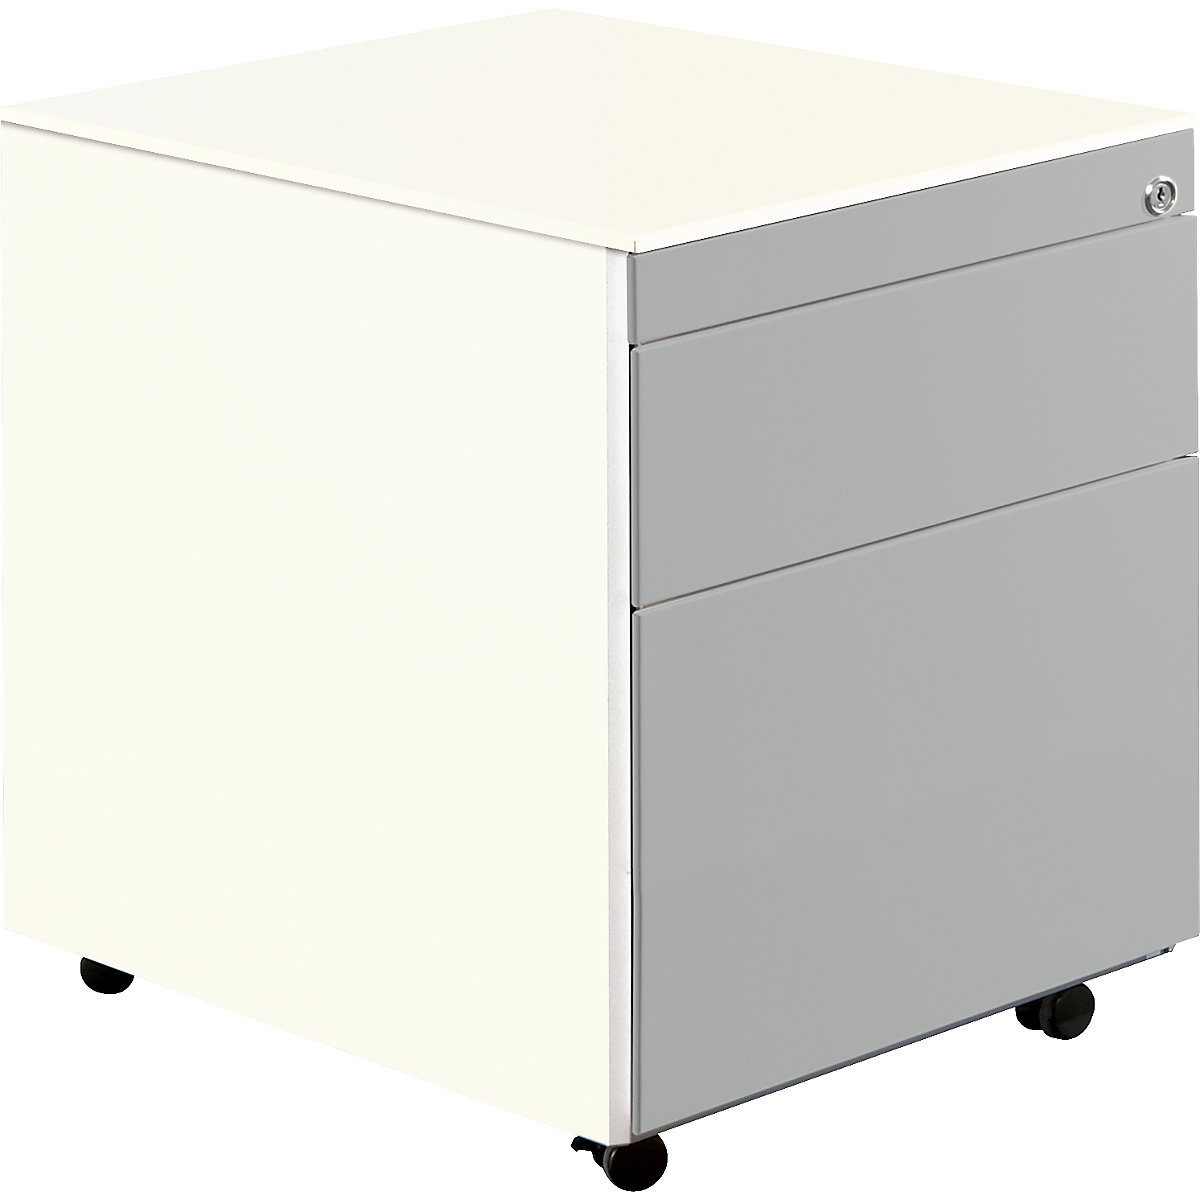 Casetieră cu sertare cu role – mauser, î. x ad. 570 x 600 mm, 1 sertar pentru materiale, 1 registratură suspendată, alb pur / alb aluminiu / alb